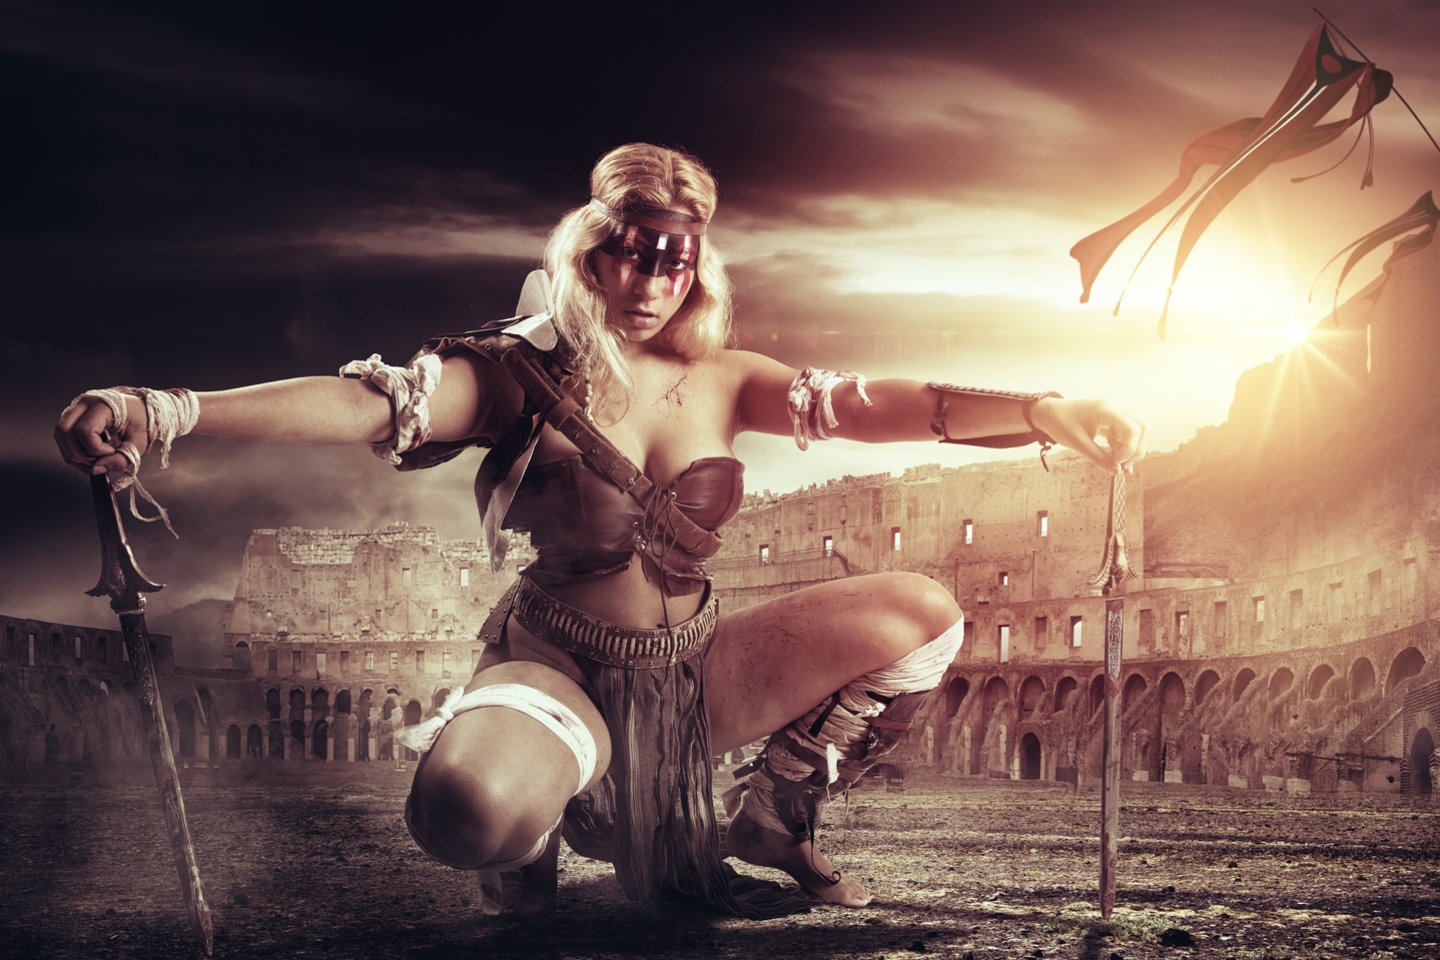   Istorikai negali tiksliai pasakyti, kad moterys pradėjo kovoti kaip gladiatorės, tačiau I mūsų eros amžiuje jos tapo gana įprastu reginiu žaidynėse.<br> 123rf iliustr.